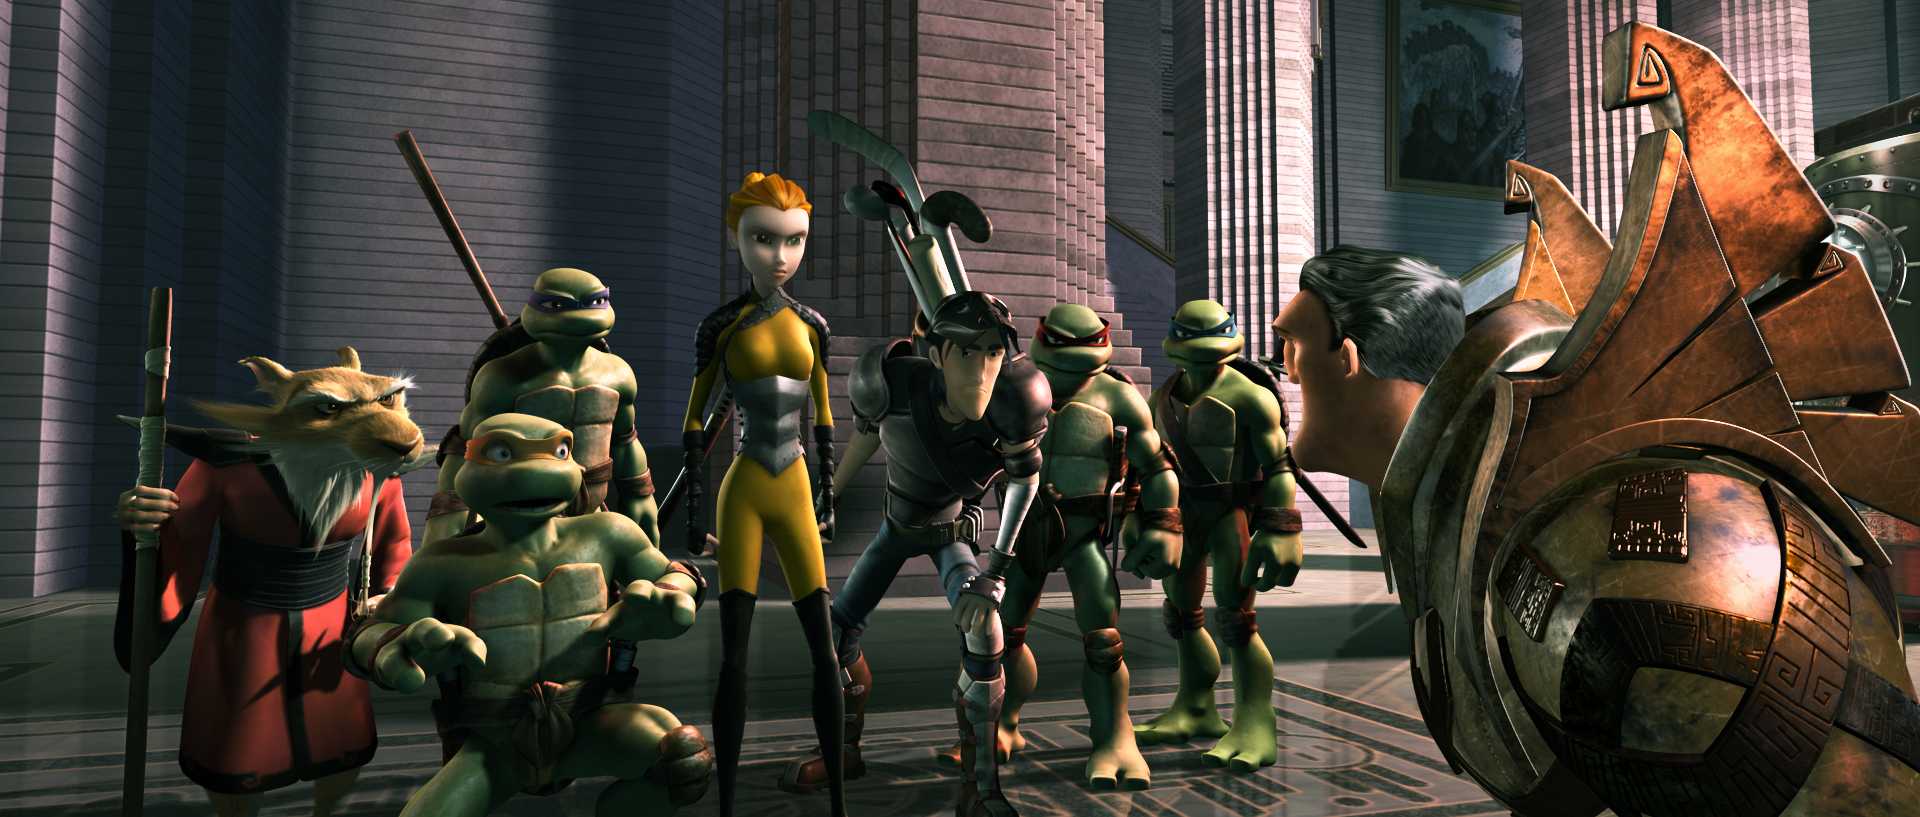 2007 Teenage Mutant Ninja Turtles 019.jpg